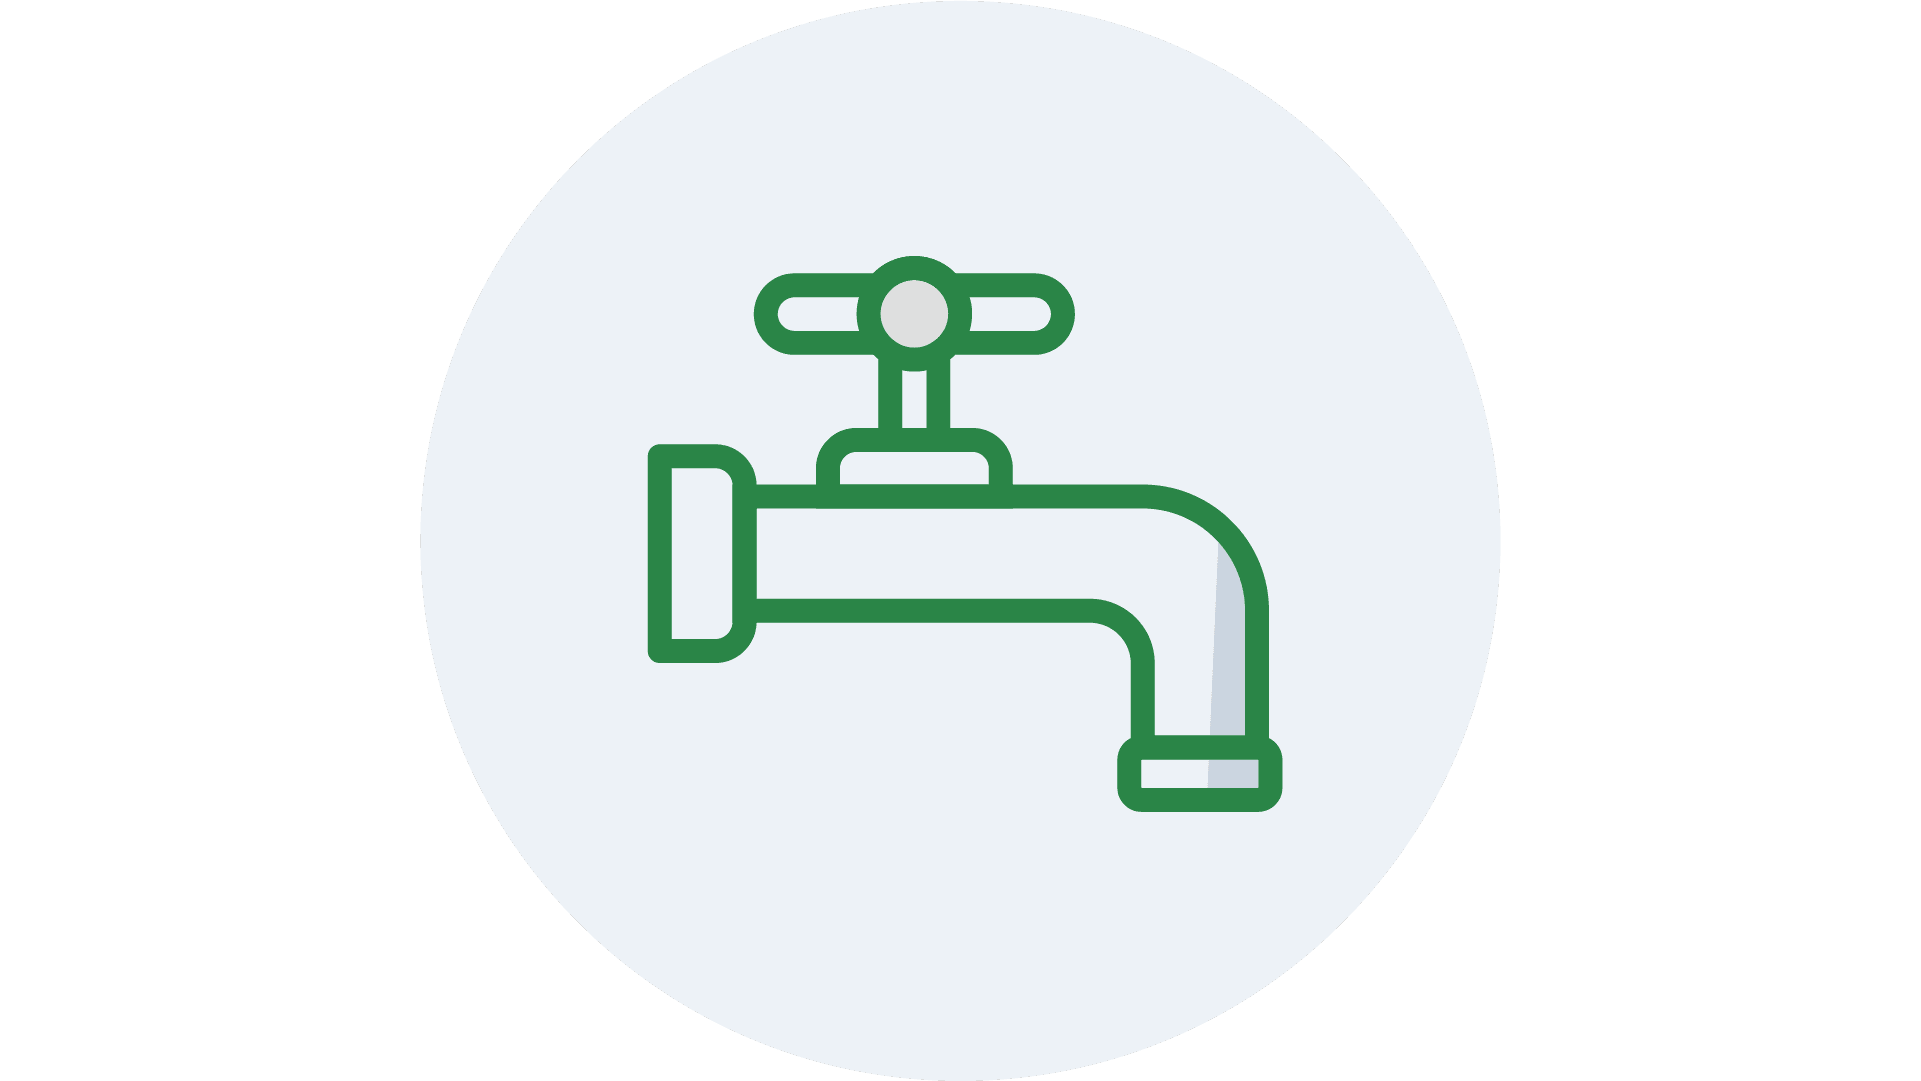 platforma b2b dla branży artykułów hydraulicznych i sanitarnych